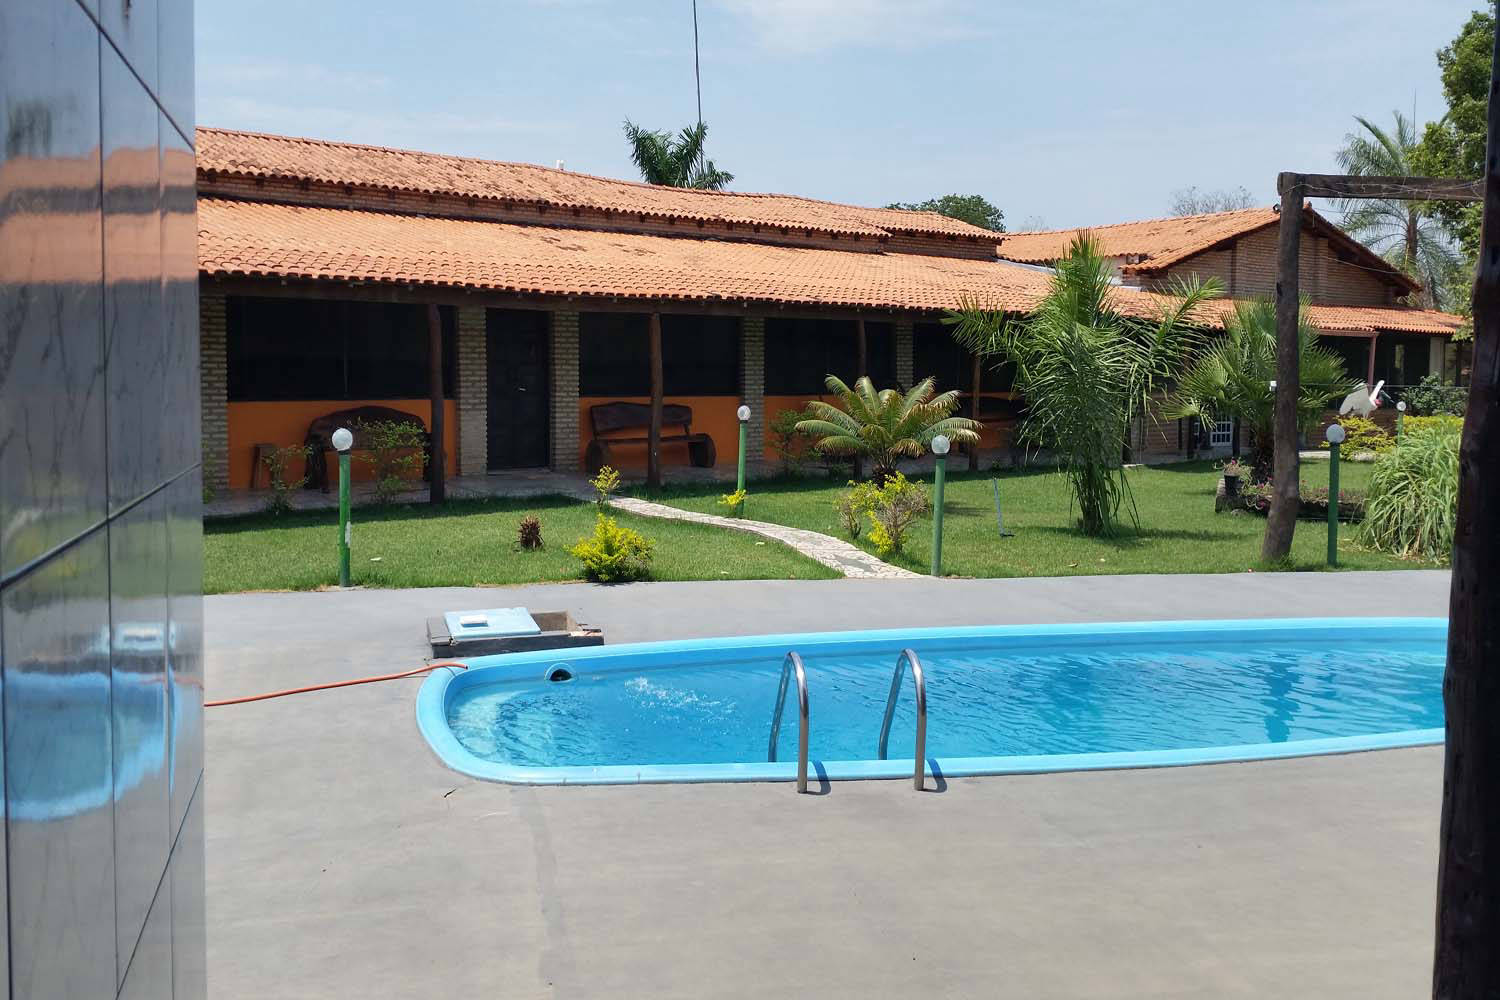 Pool und Fläche zum Relaxen neben Hotel